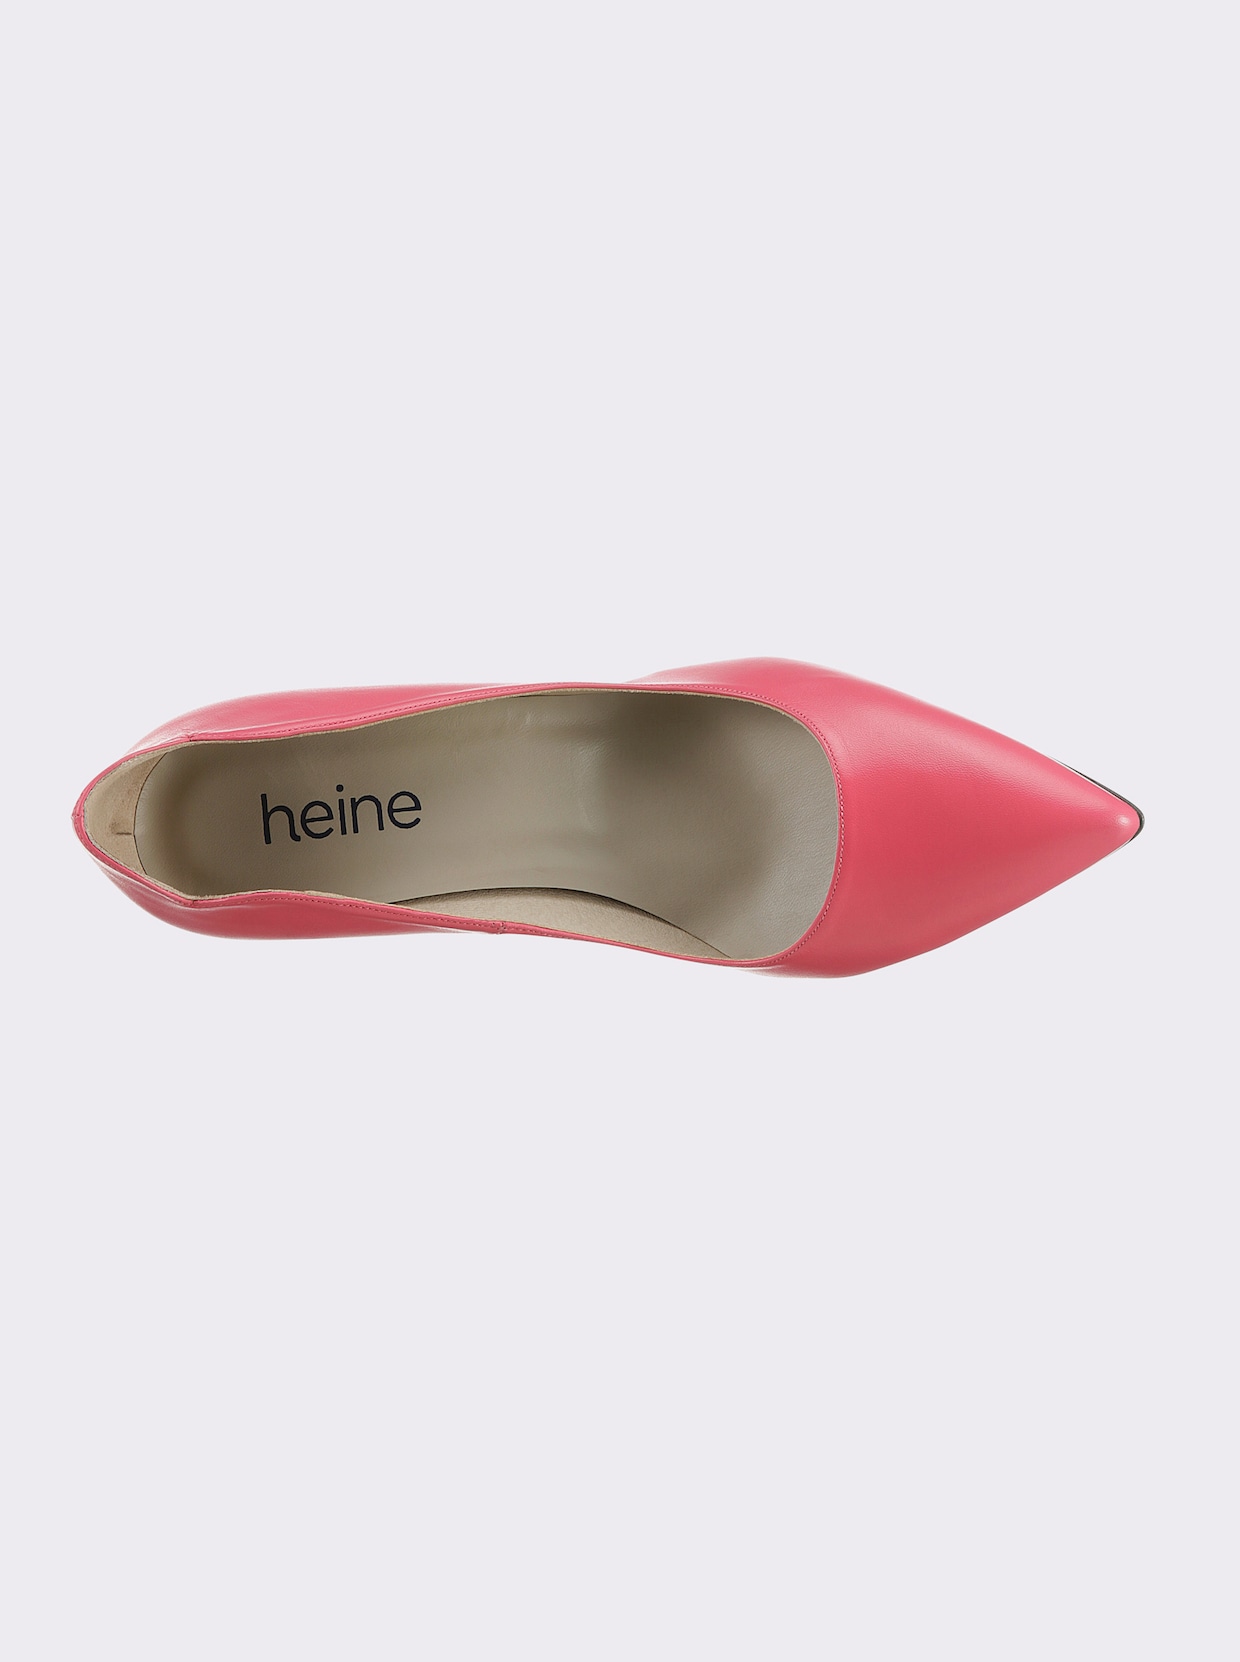 heine Pumps - pink